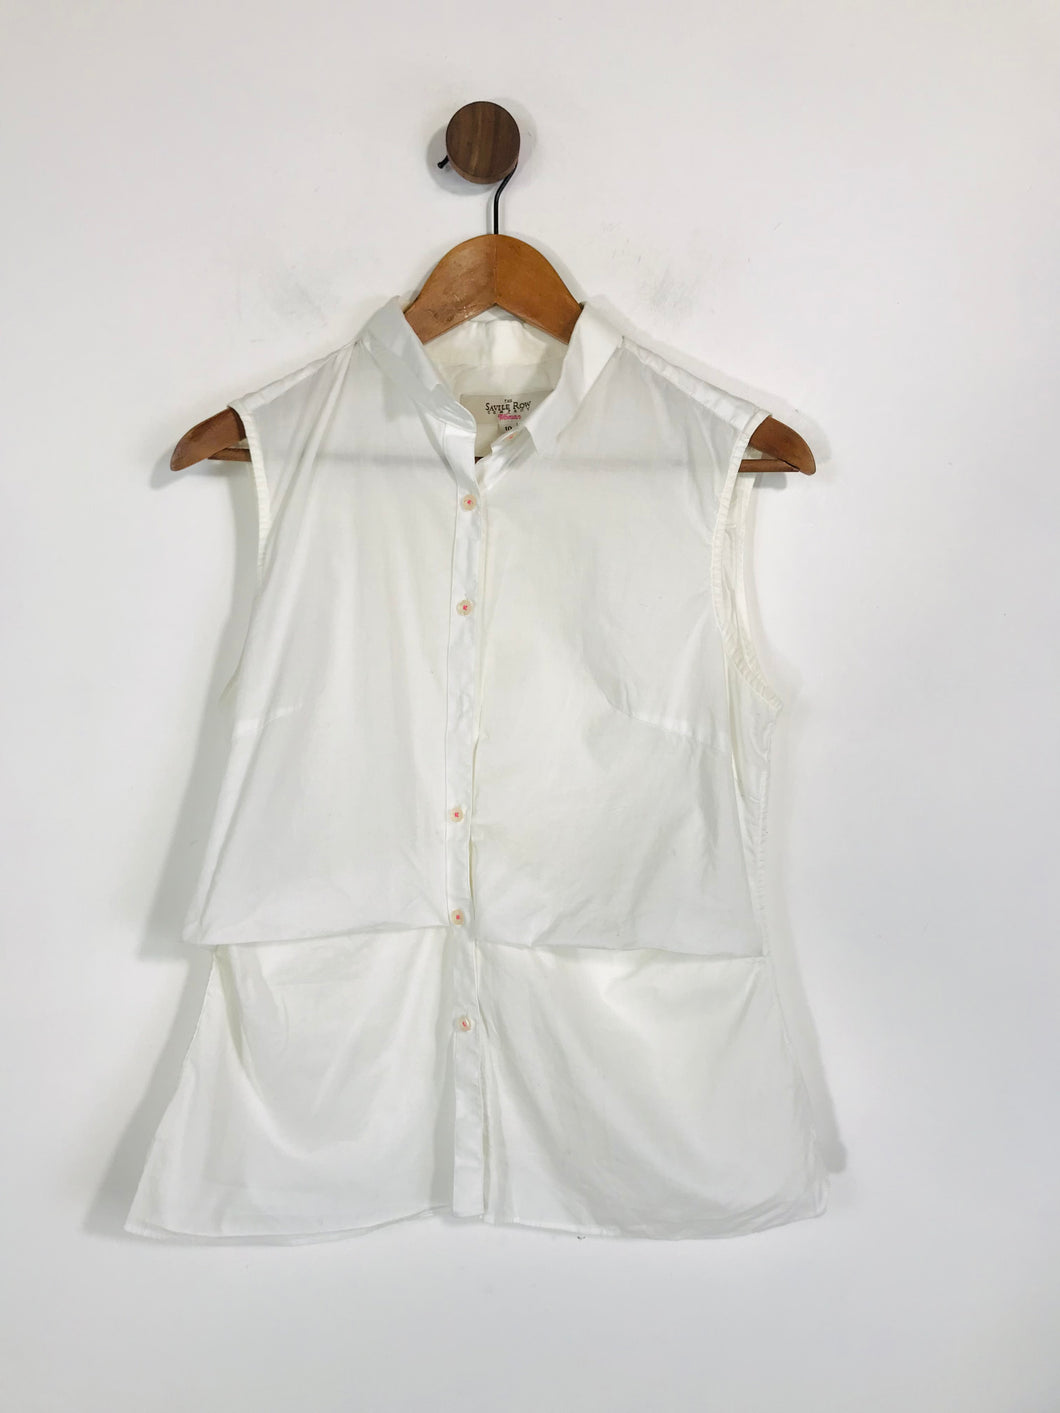 Savile Row Women's Cotton High Neck Blouse | UK10 | White